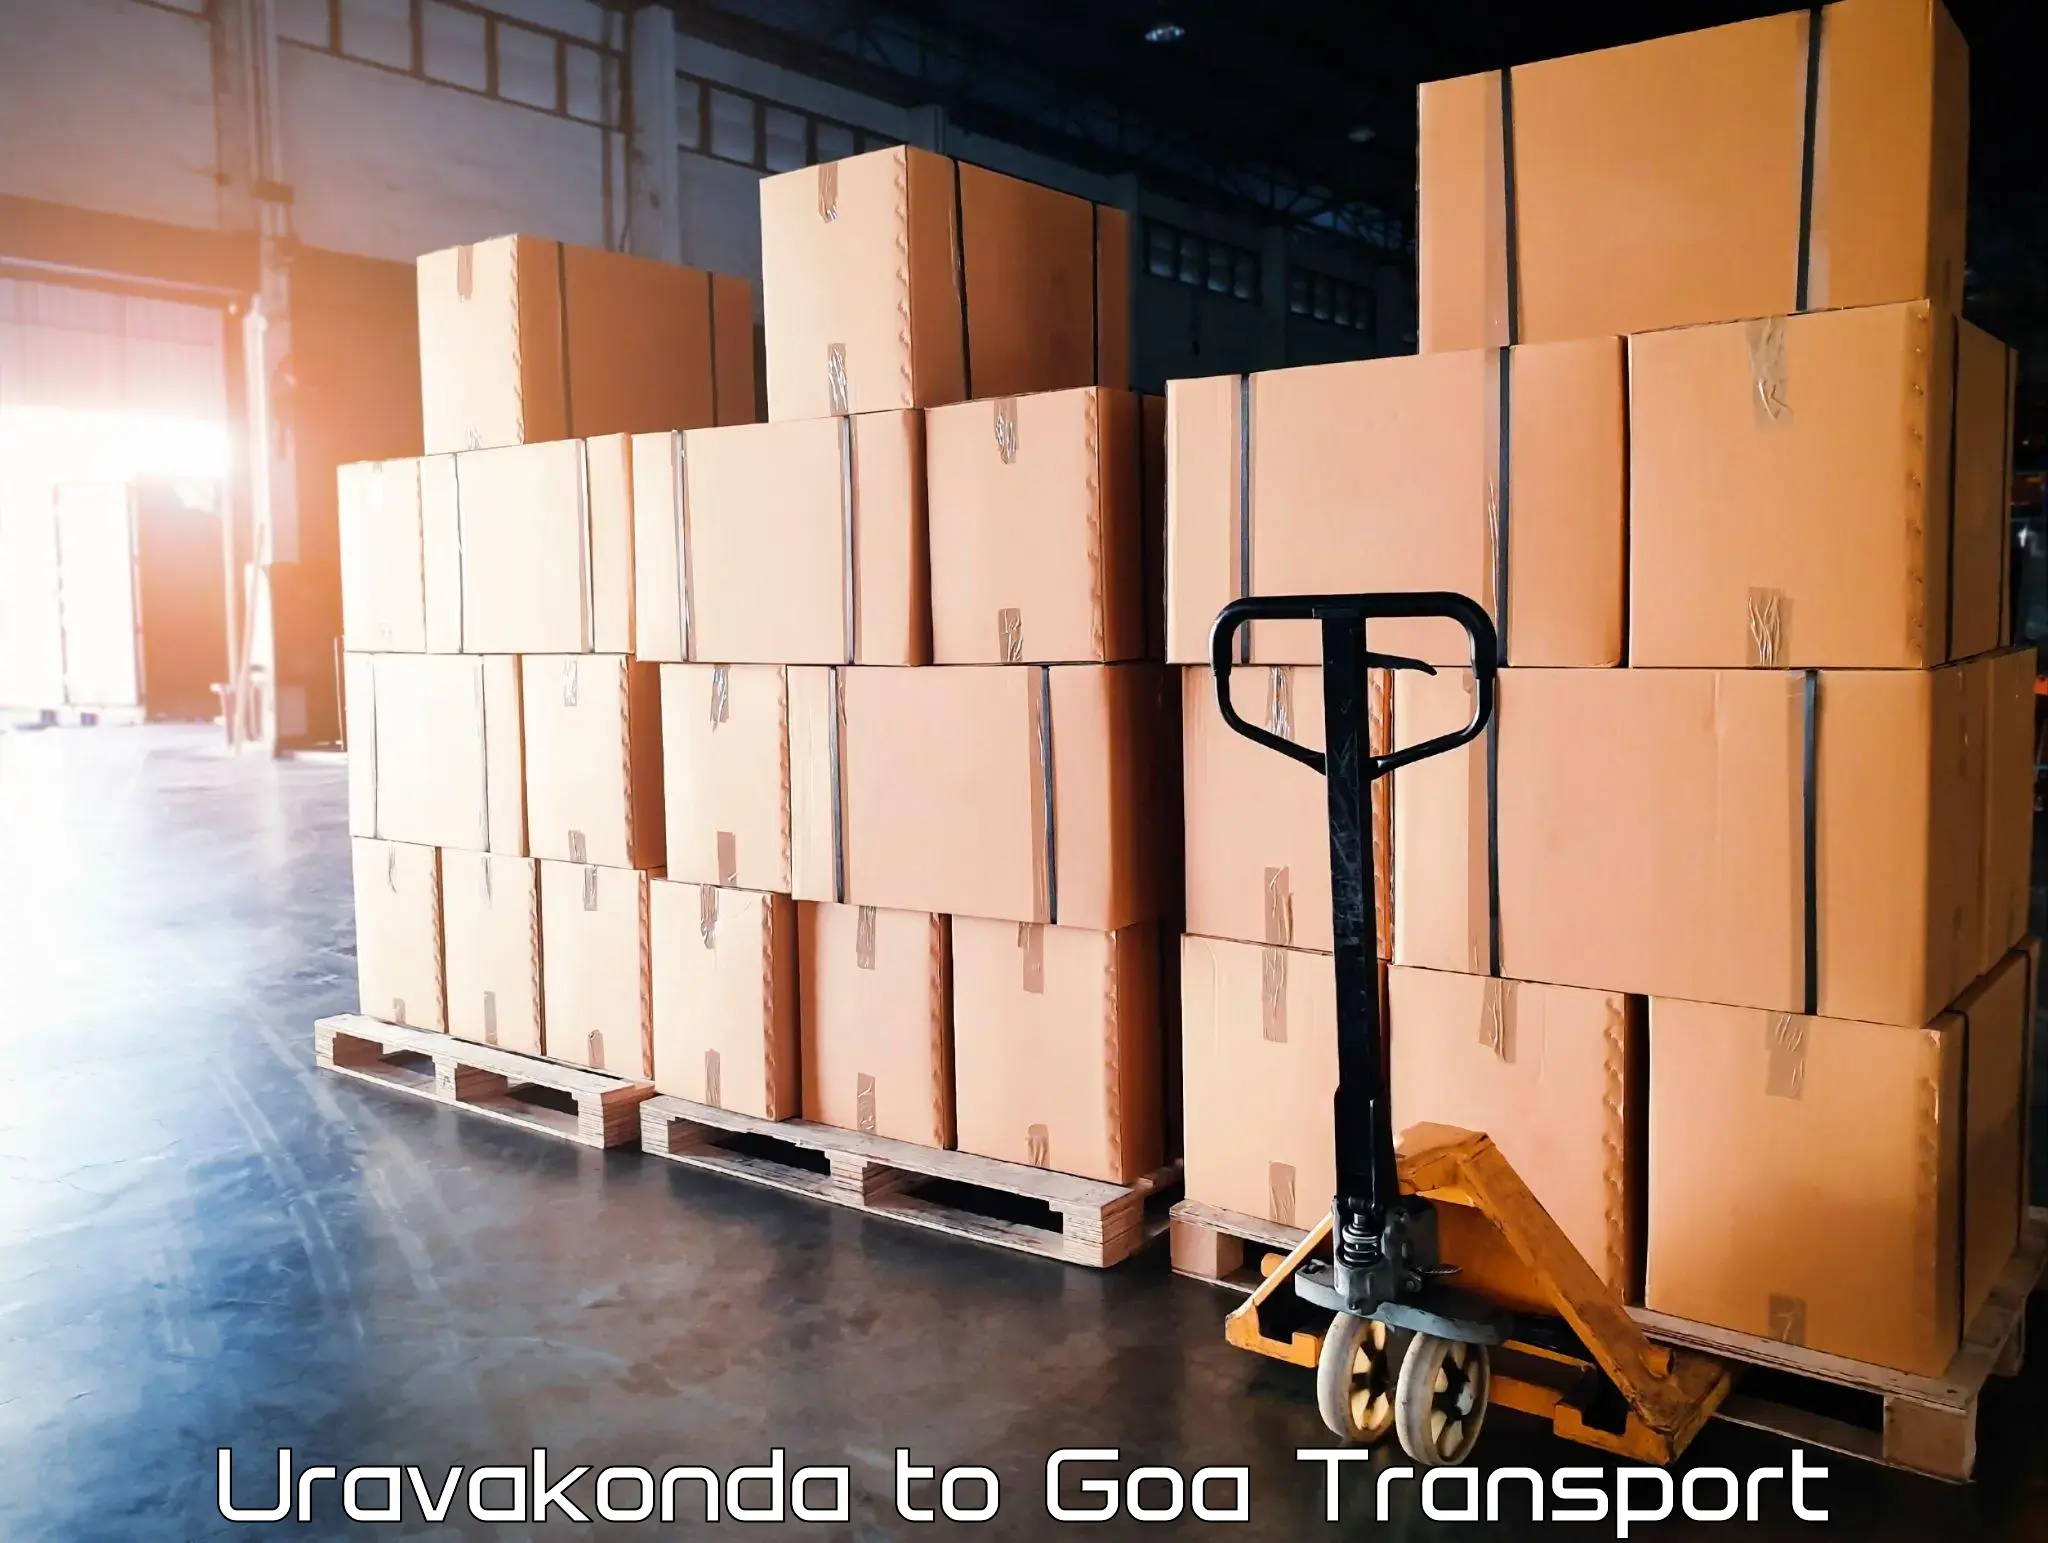 Nearby transport service Uravakonda to Vasco da Gama